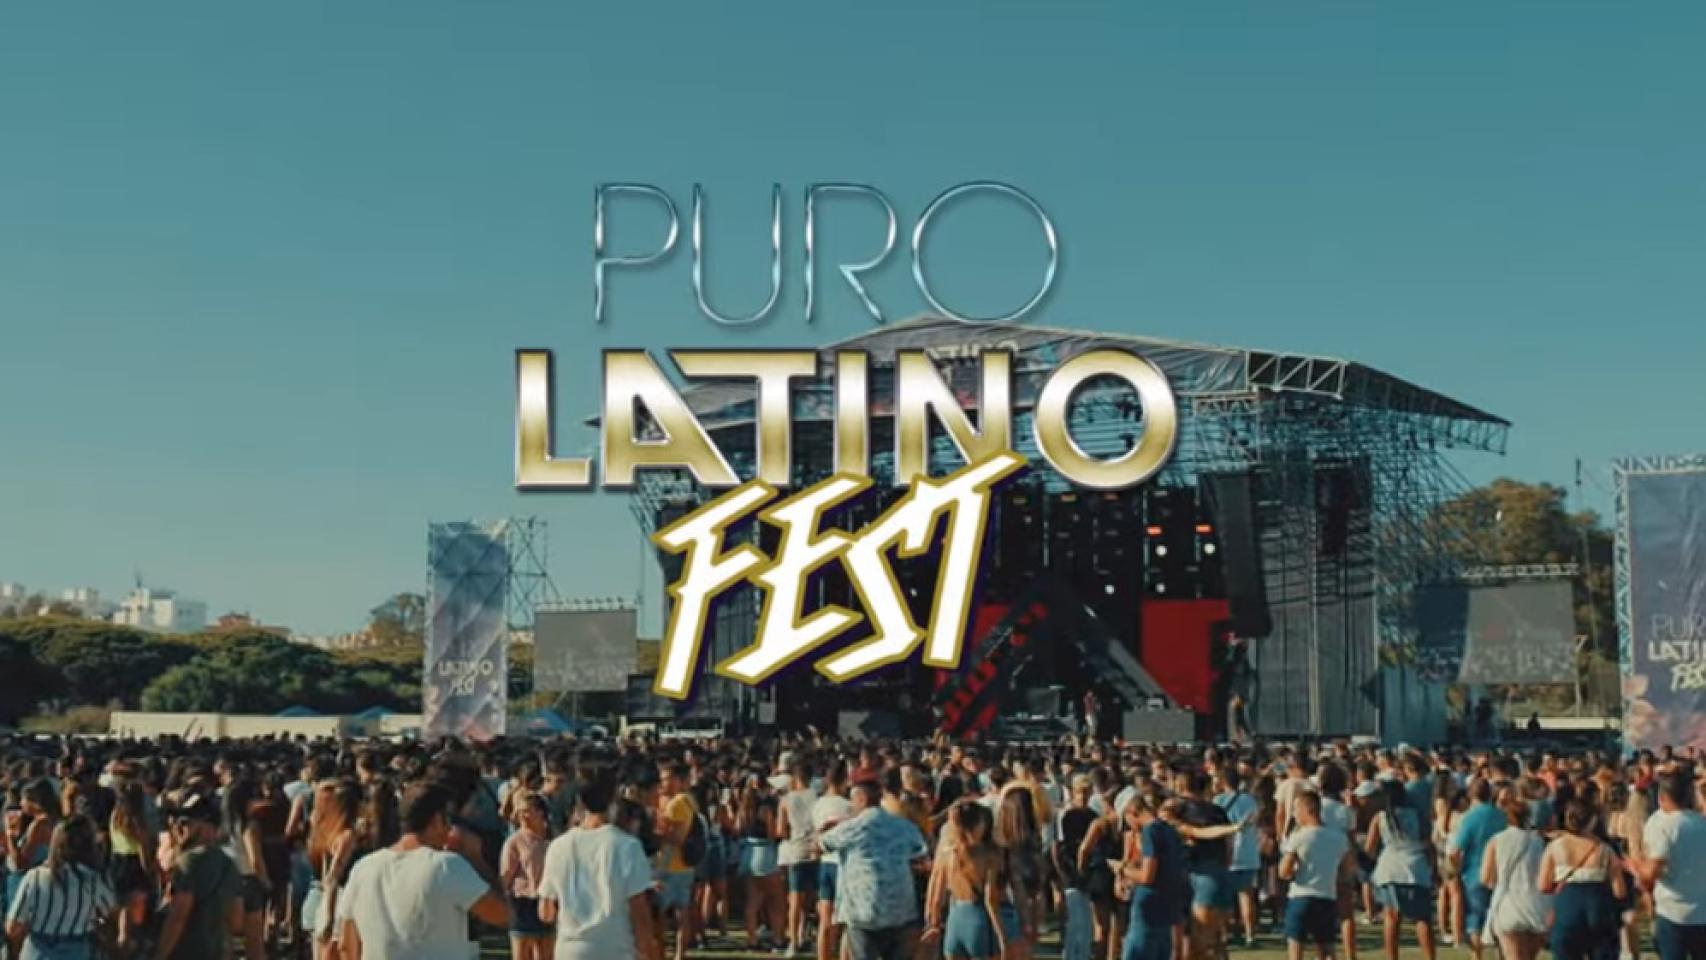 Puro Latino Festival.